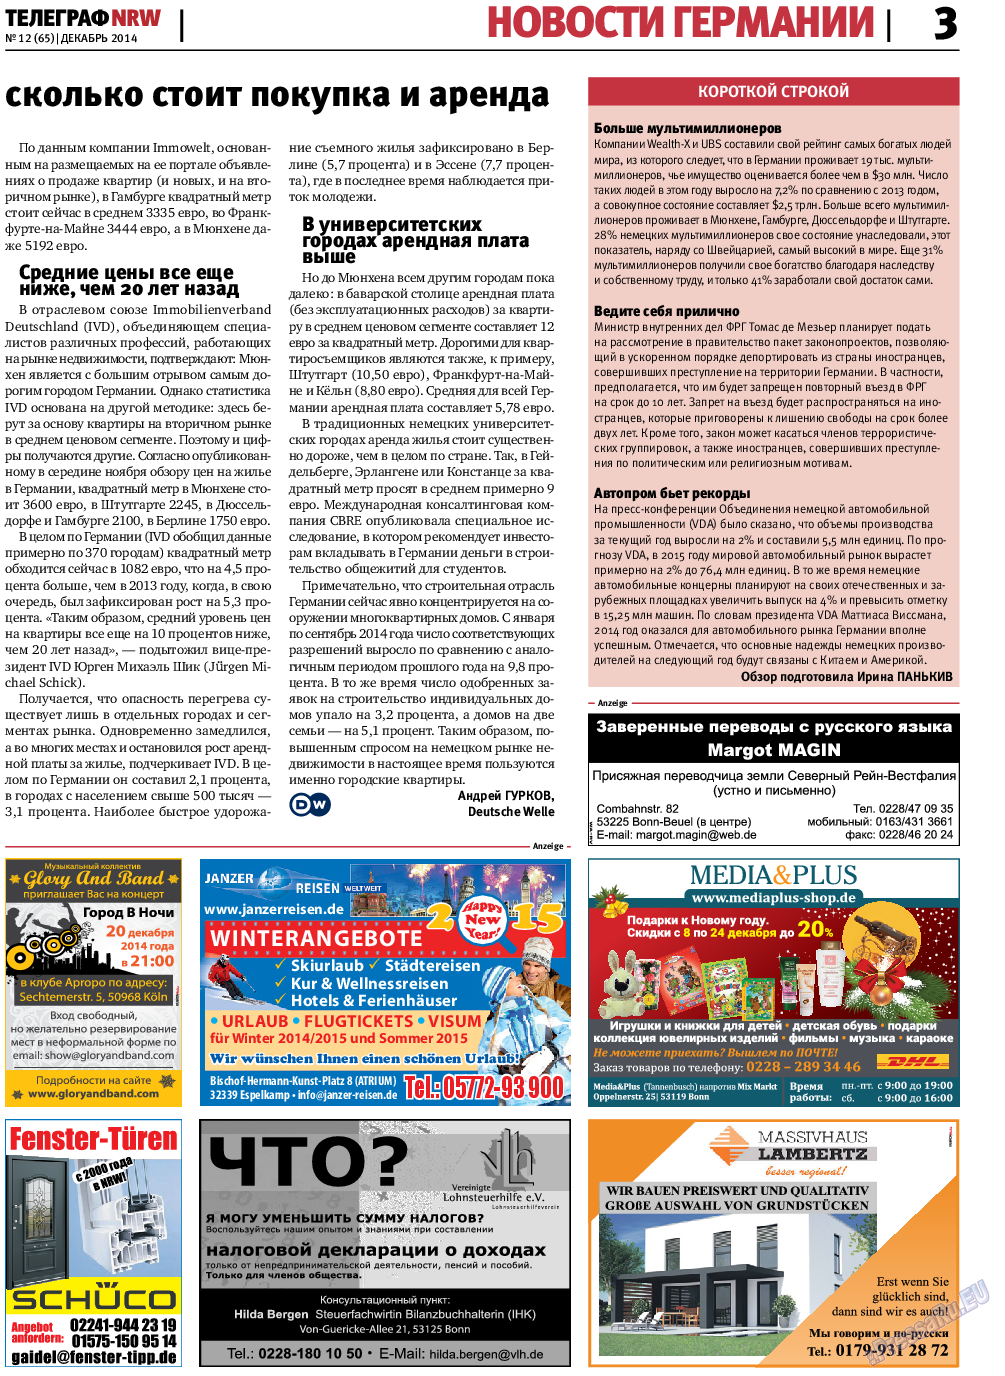 Телеграф NRW (газета). 2014 год, номер 12, стр. 3